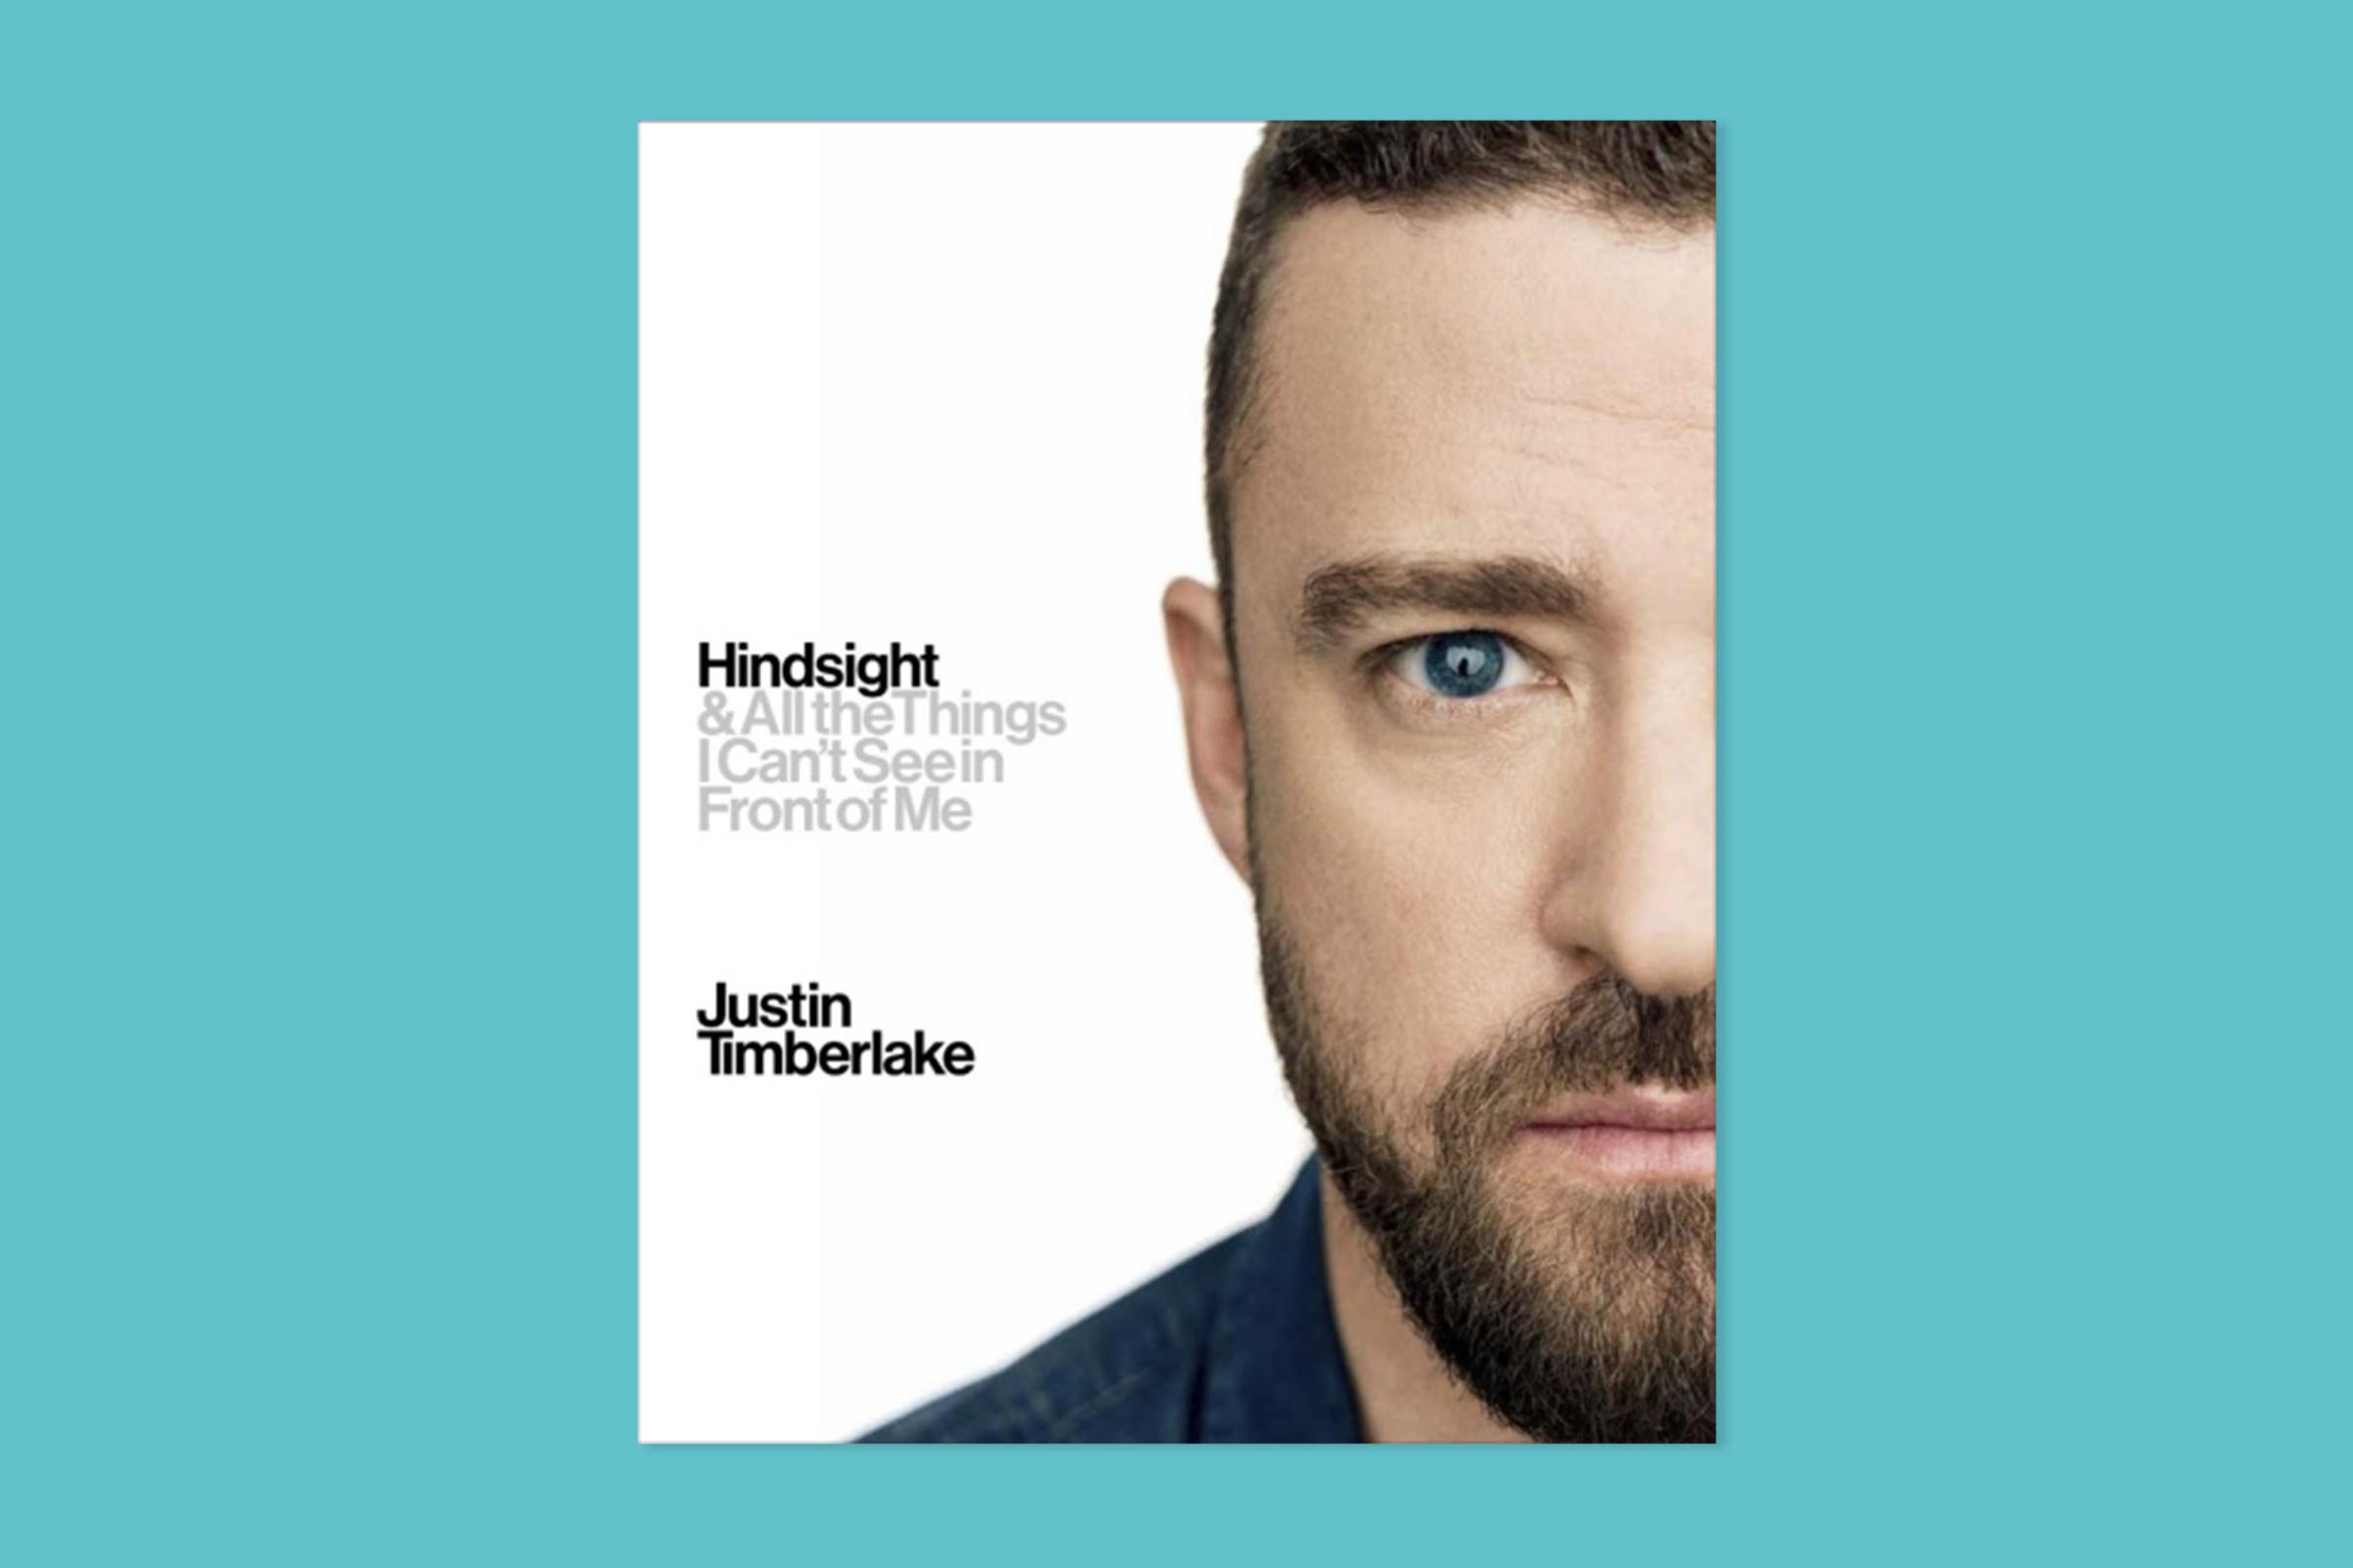 Hindsight by Justin Timberlake